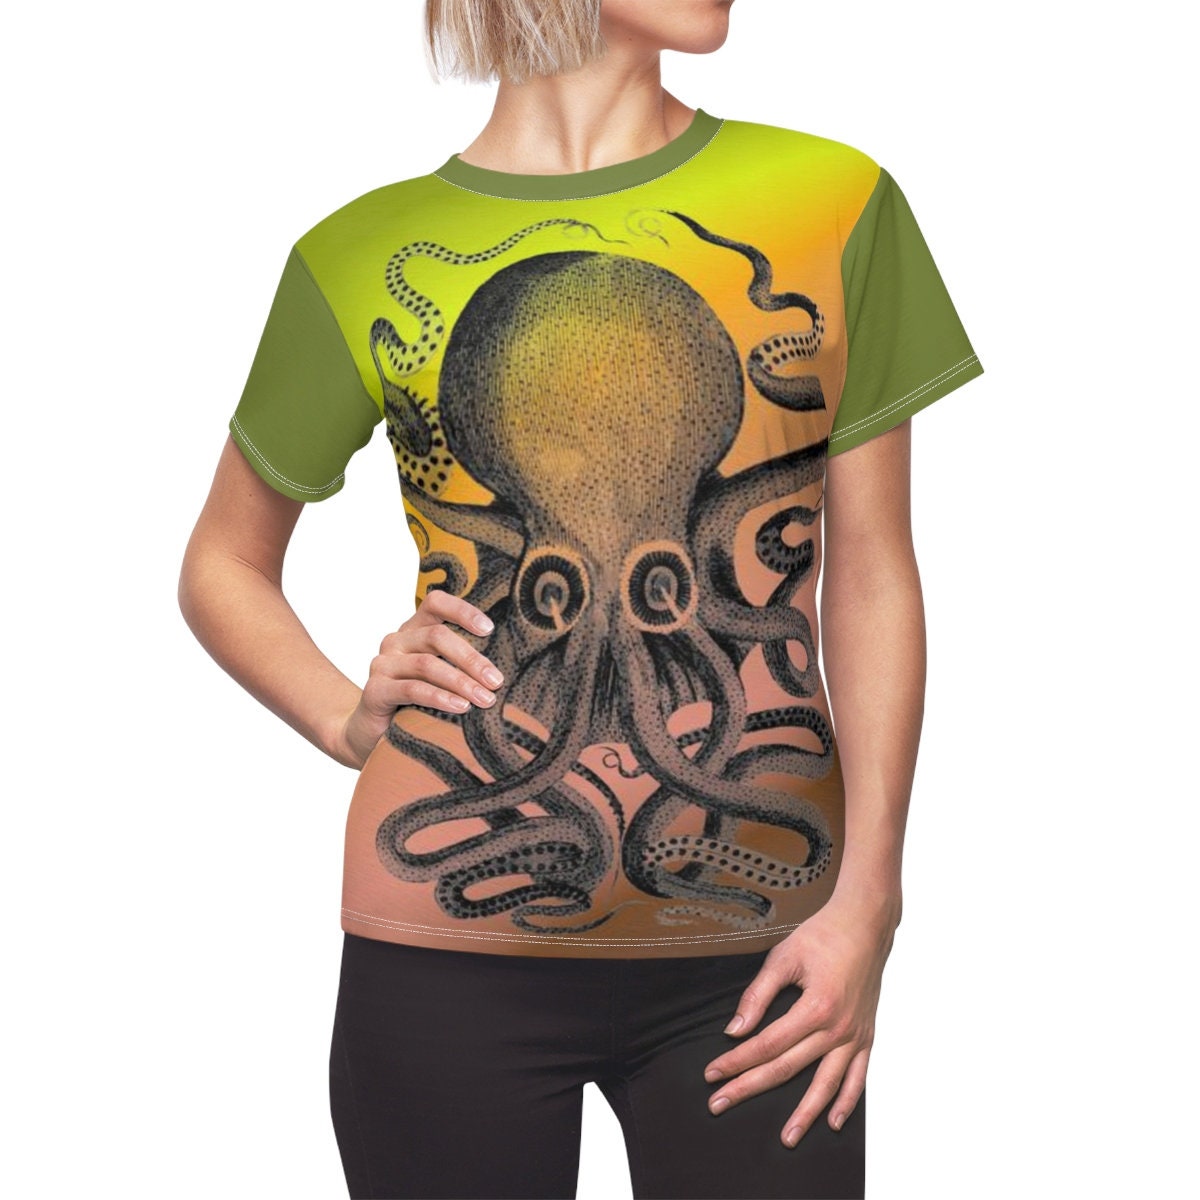 Beautiful Gift / Octopus / Women's / Tee T-Shirt Shirt / Woodcut / Classic / Valentine's gift / Pretty / Vintage / Art / New / Sexy - Chloe Lambertin